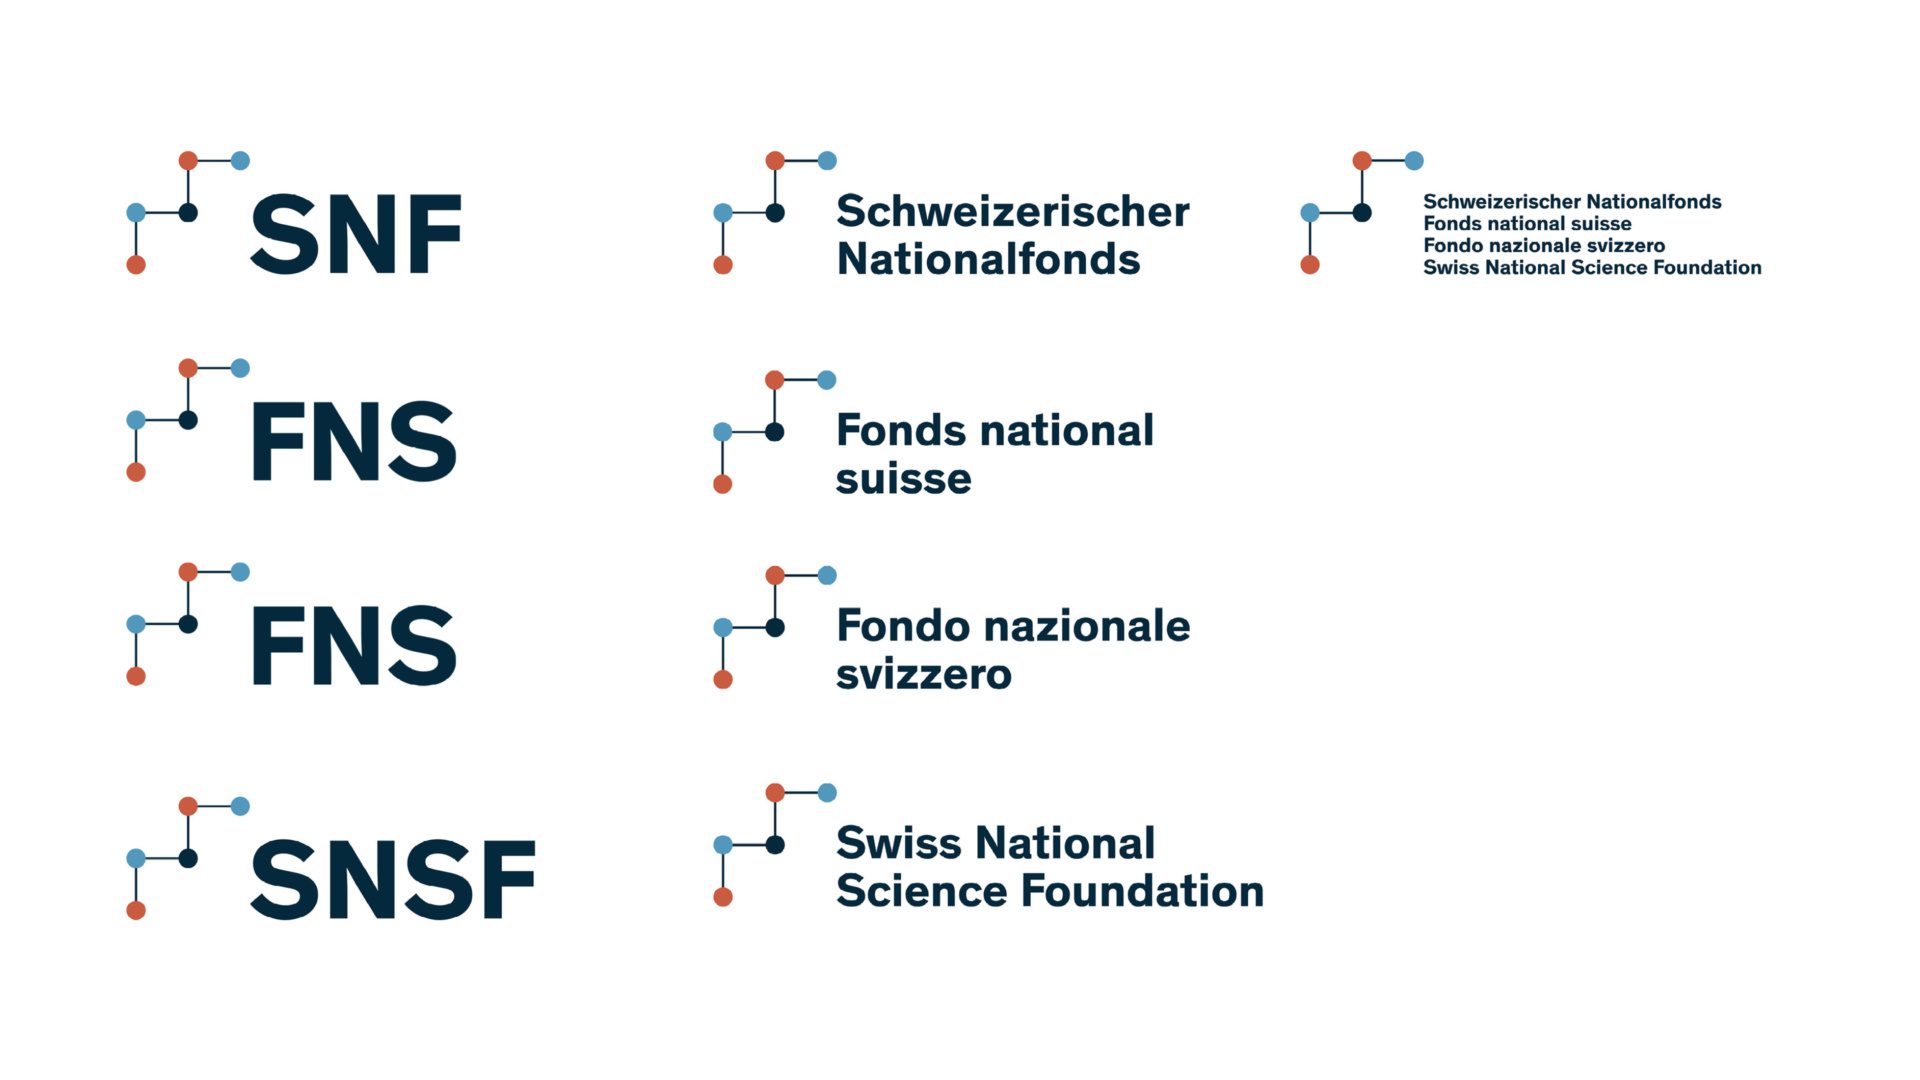 Schweizerischer Nationalfonds und Farner Branding